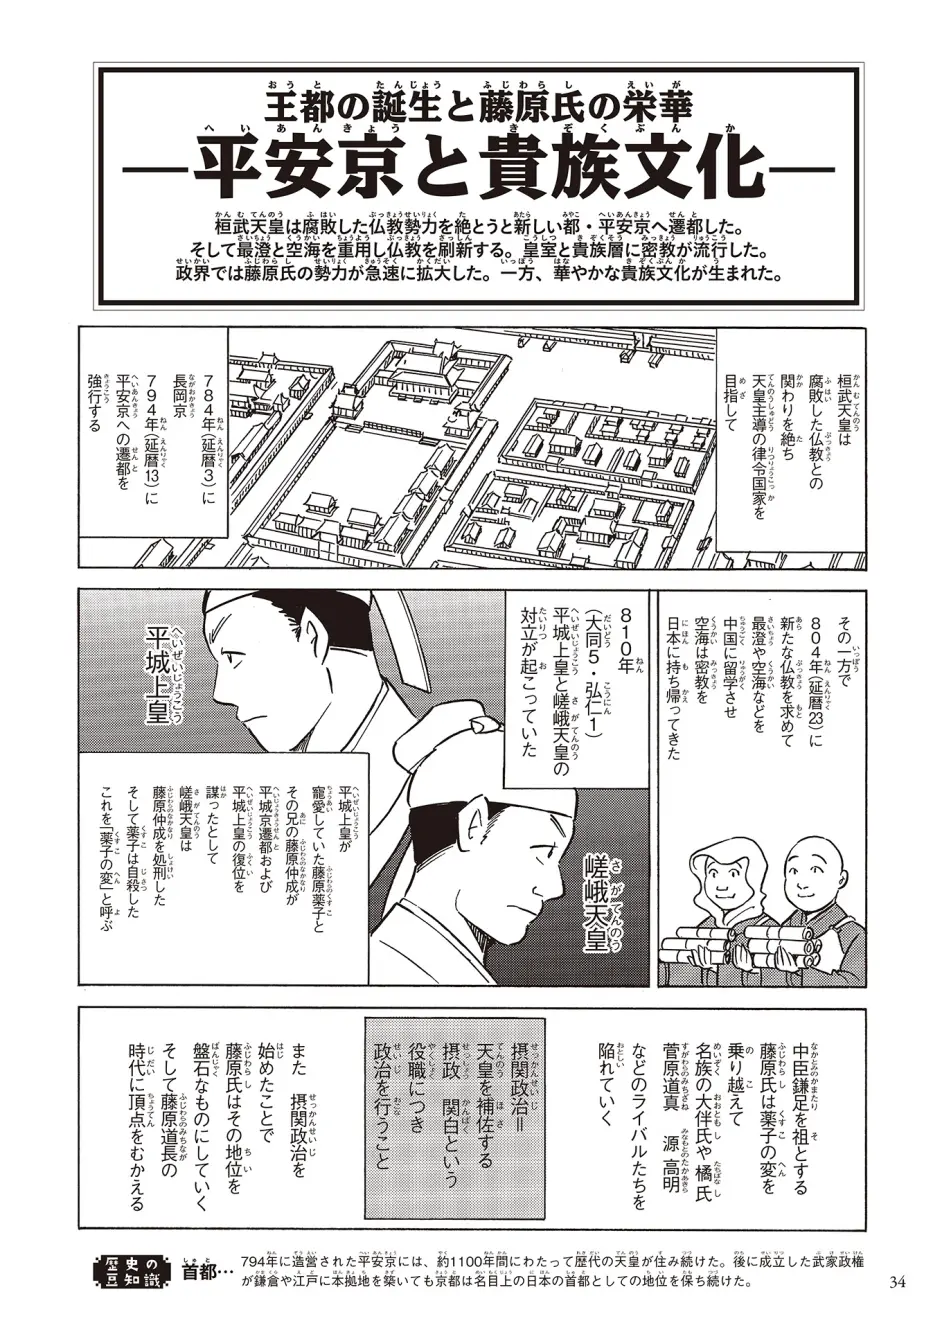 阴阳师活跃的平安时代到底是个什么样日本初中课外教材漫画解说影响日本历史的千人 哔哩哔哩